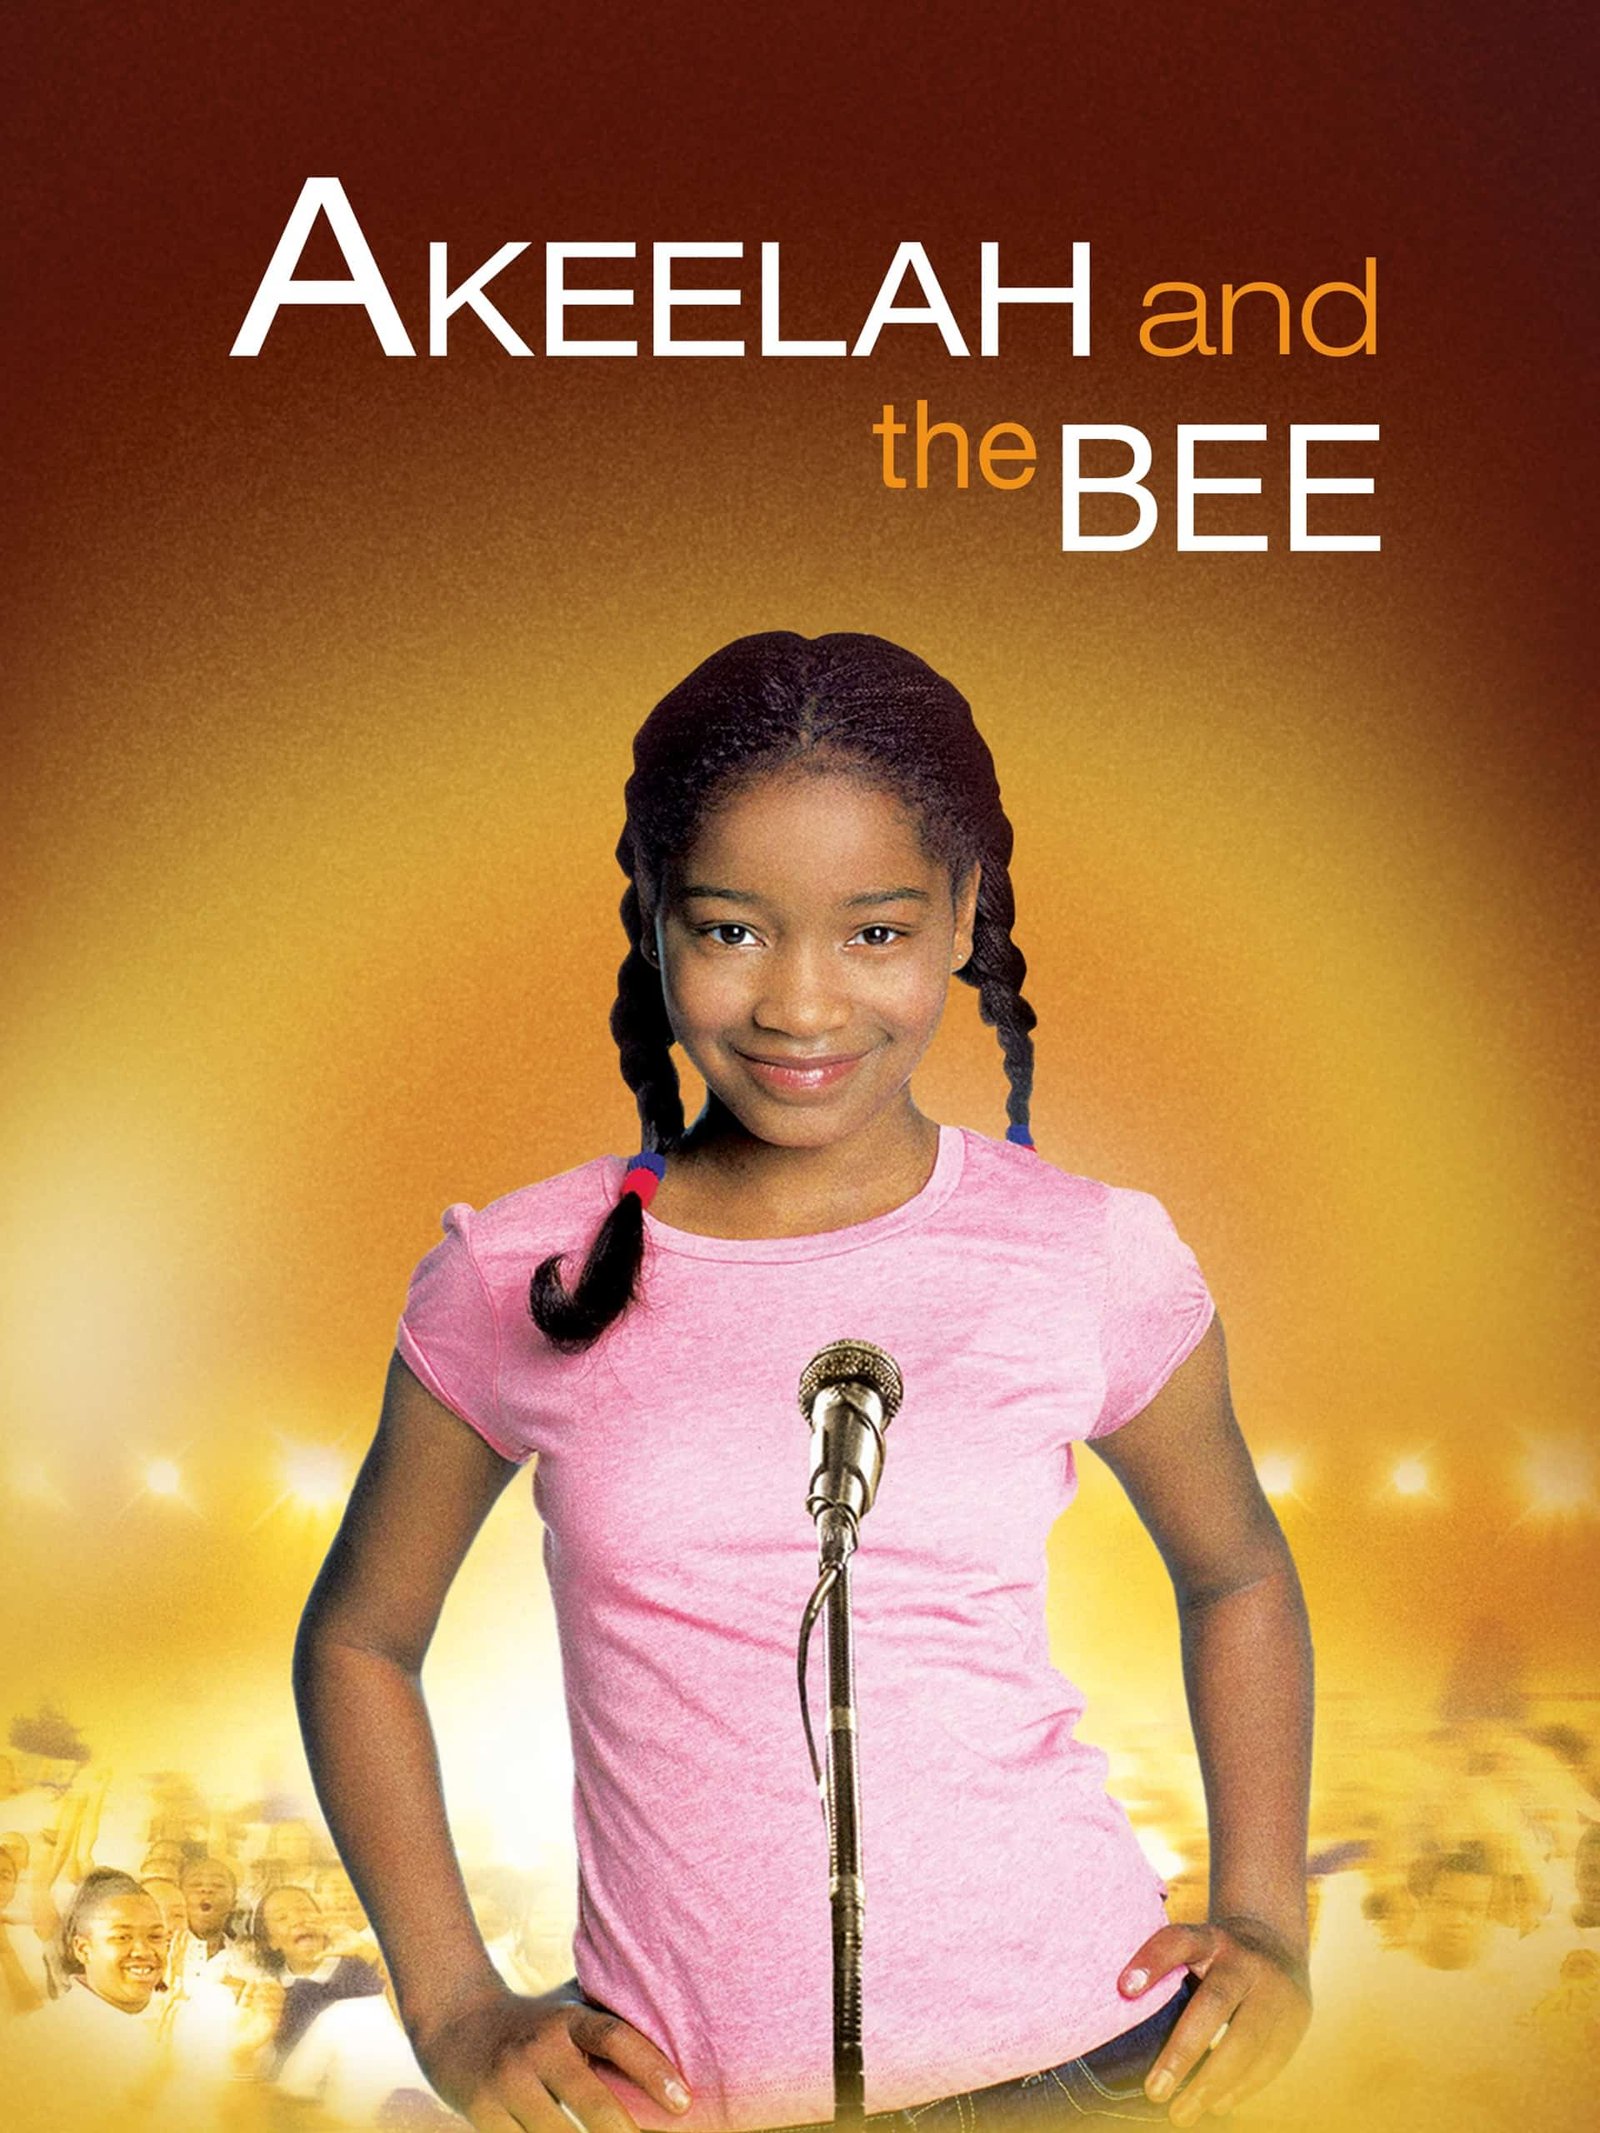 Akeelah in Scripps National Spelling Bee